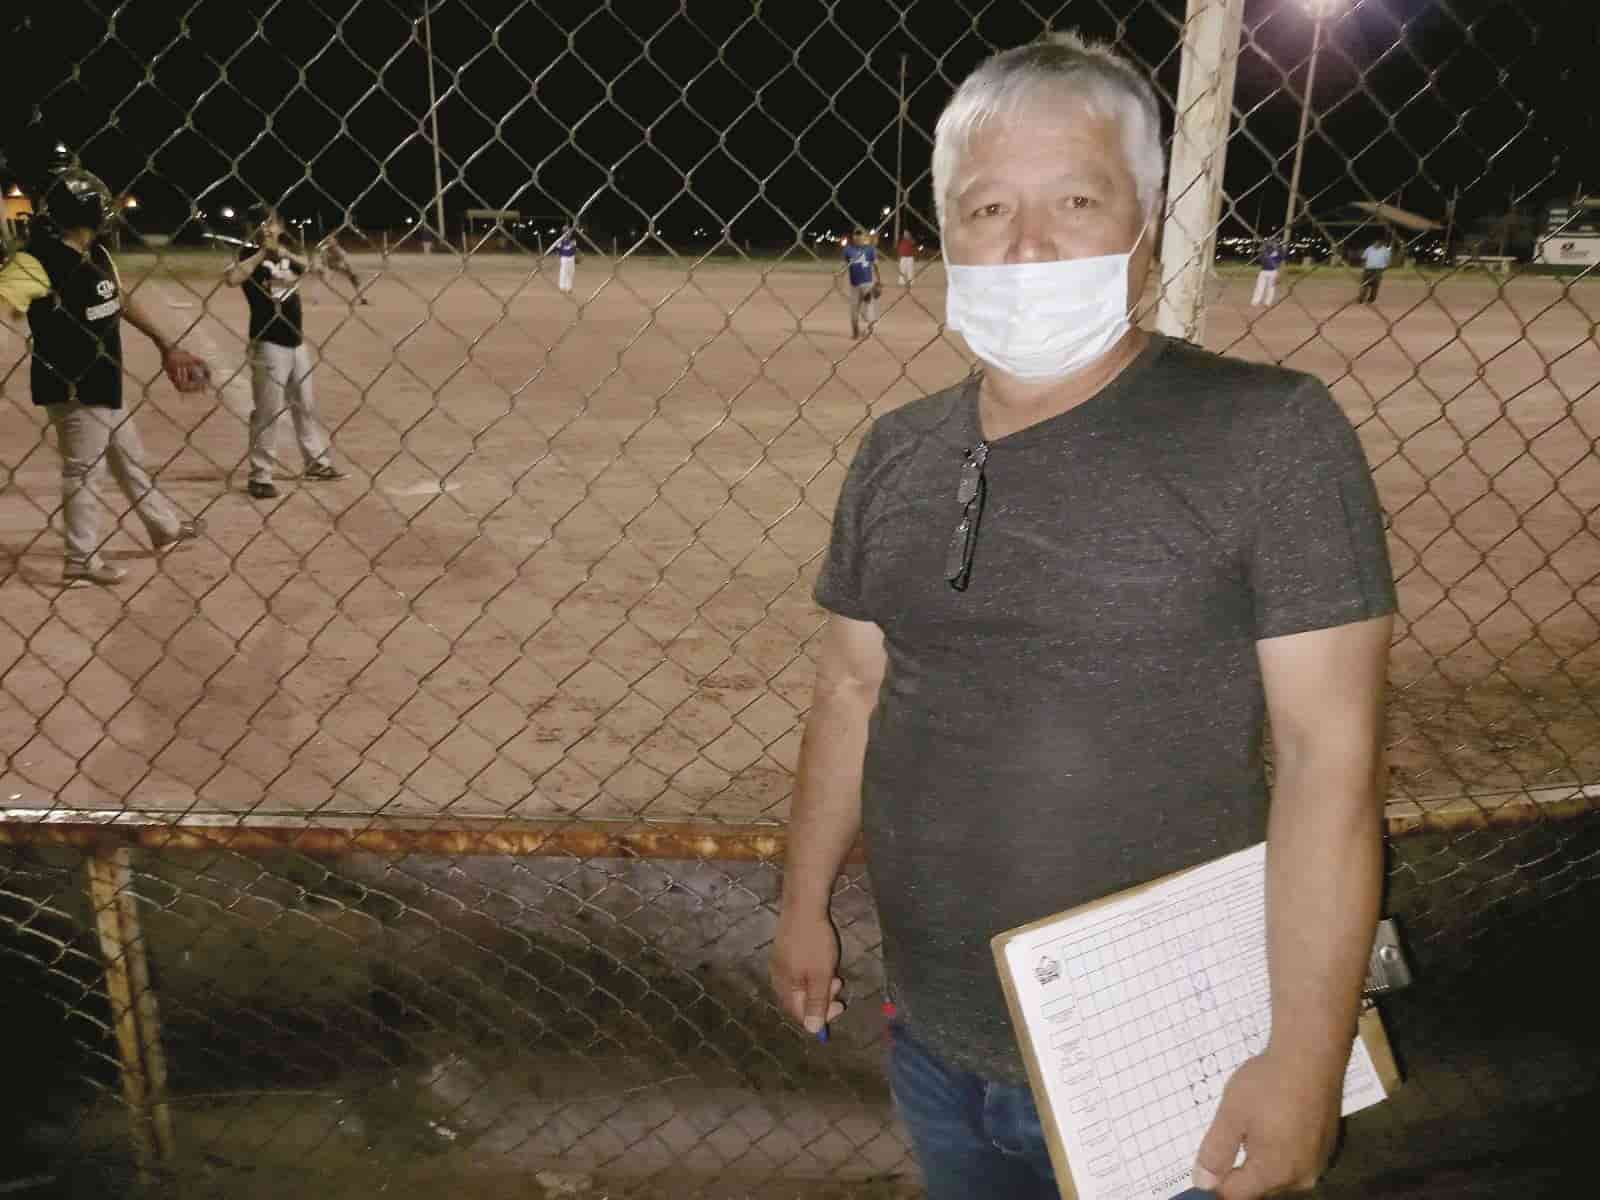 “Los invito a que vean cómo se maneja la liga”: Presidente de la Liga de Softbol Amimem